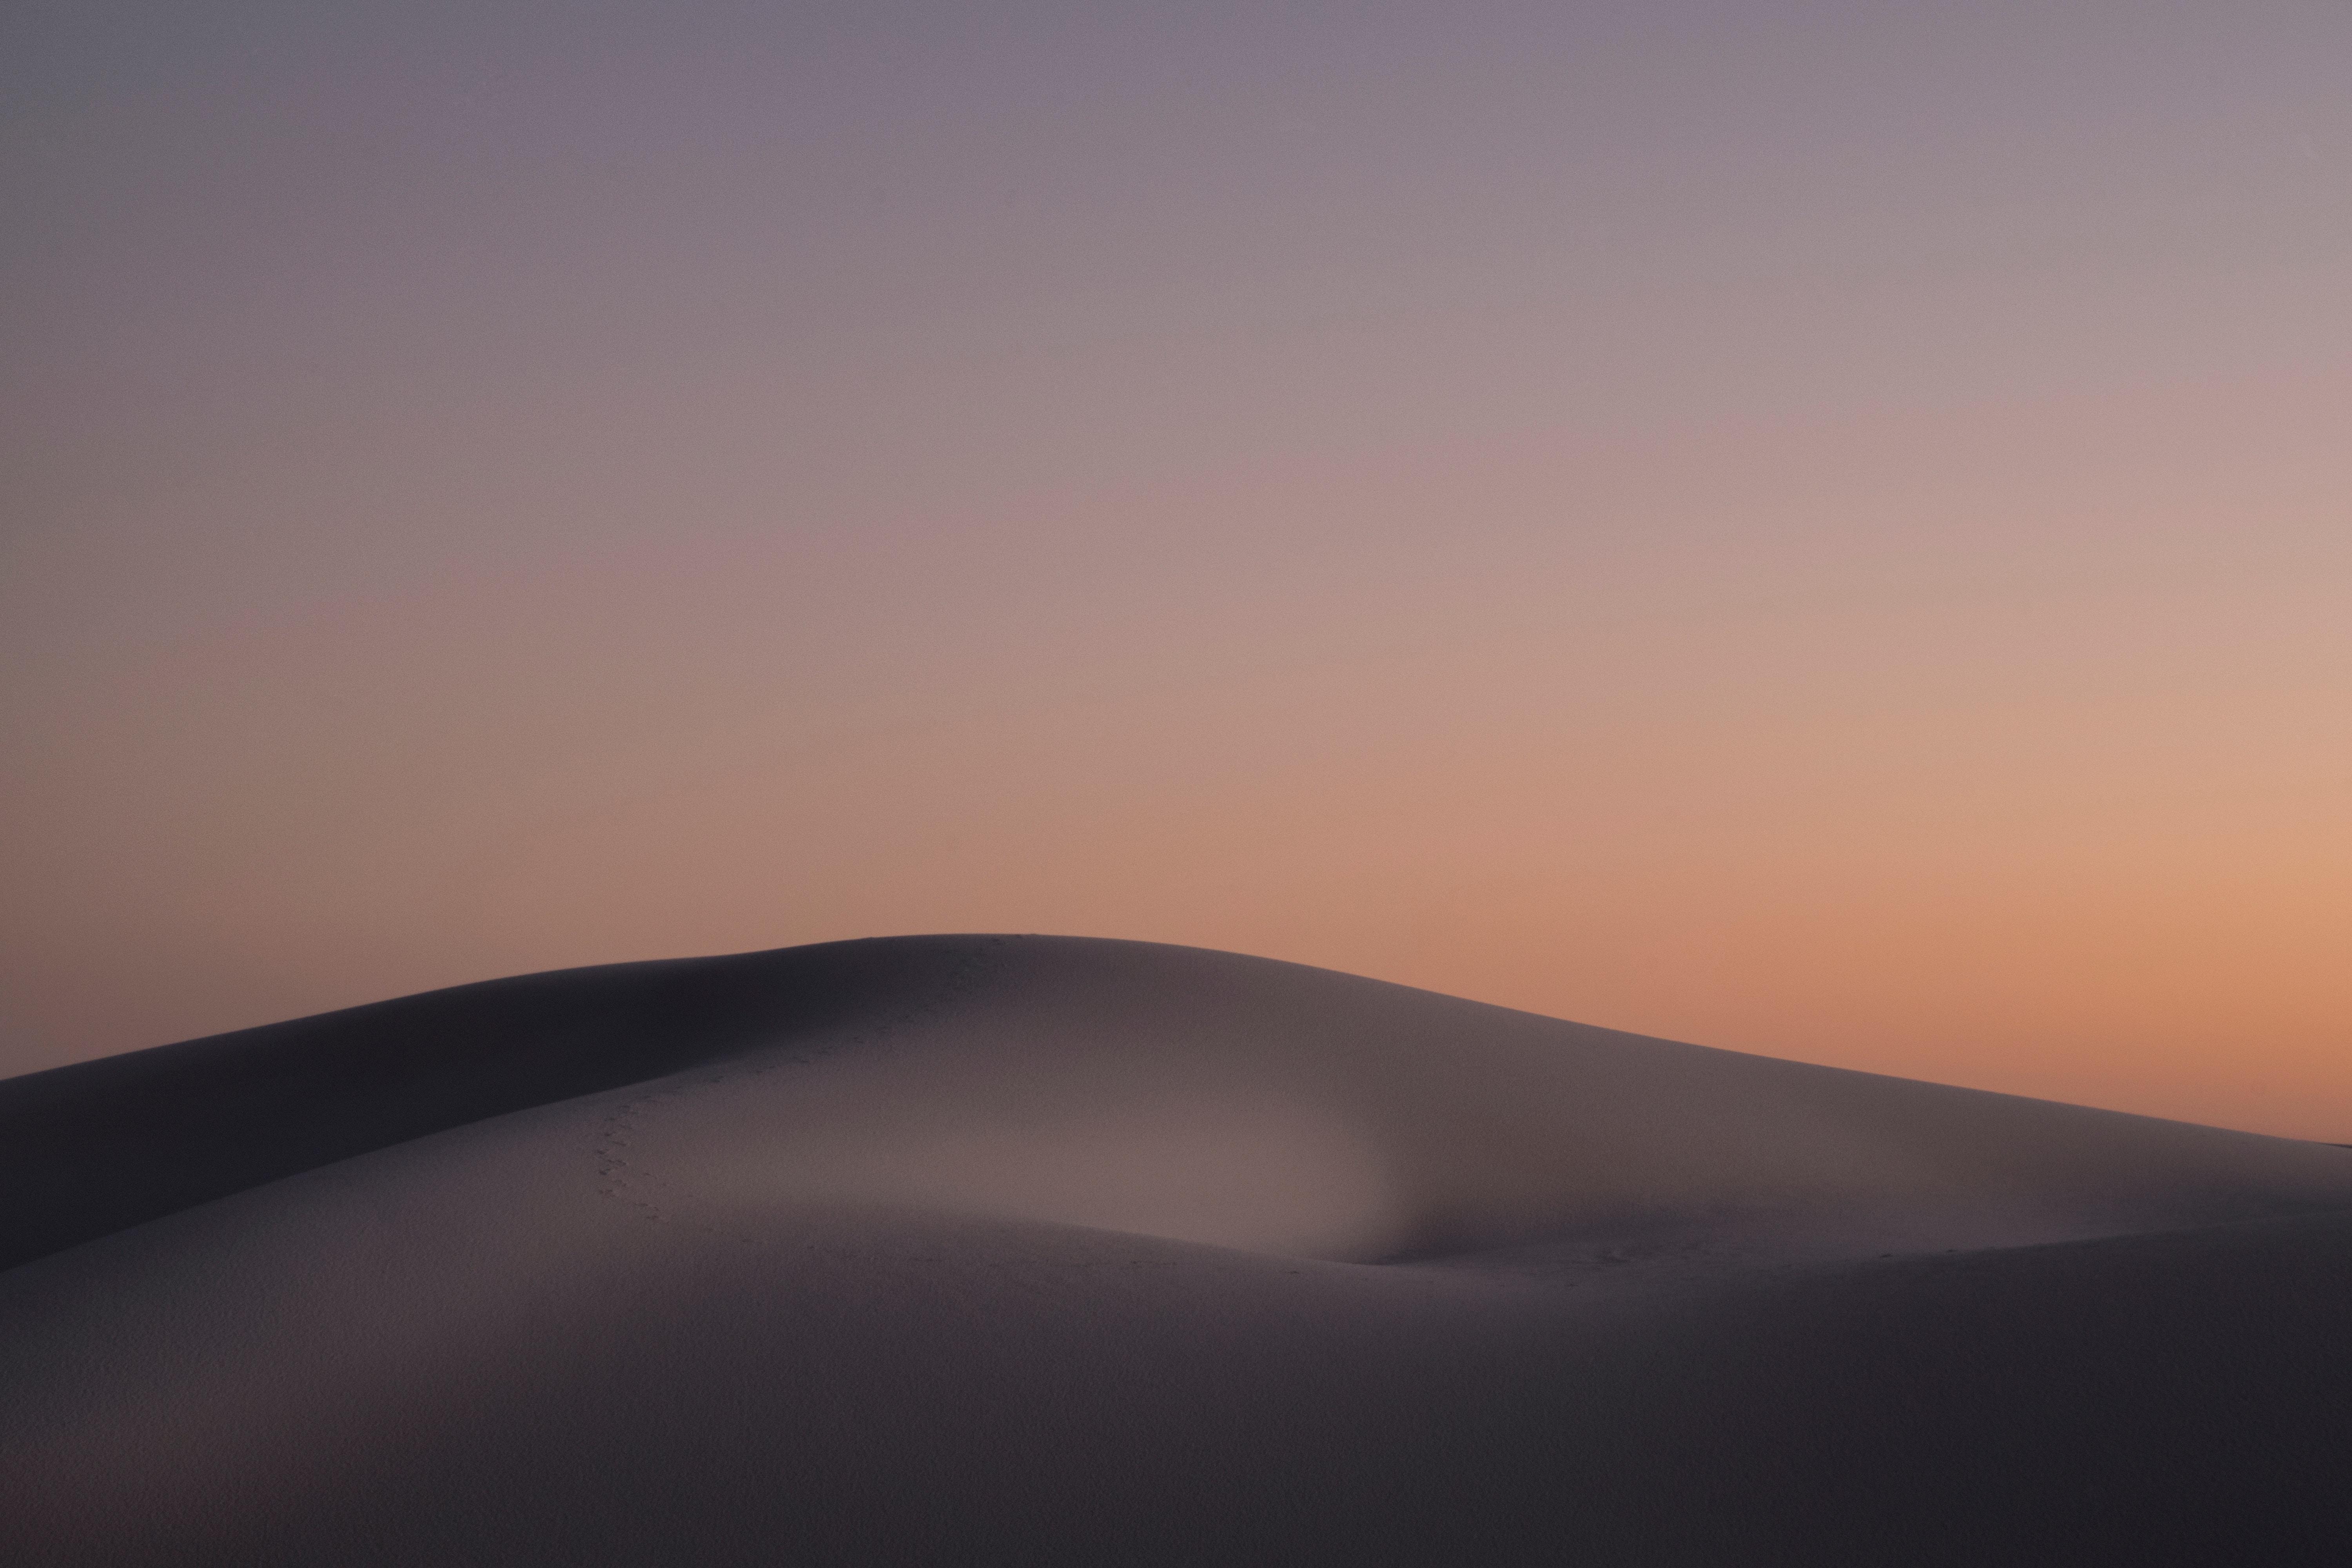 6000x4000 #desert landscape, #dune, #desert, #sand